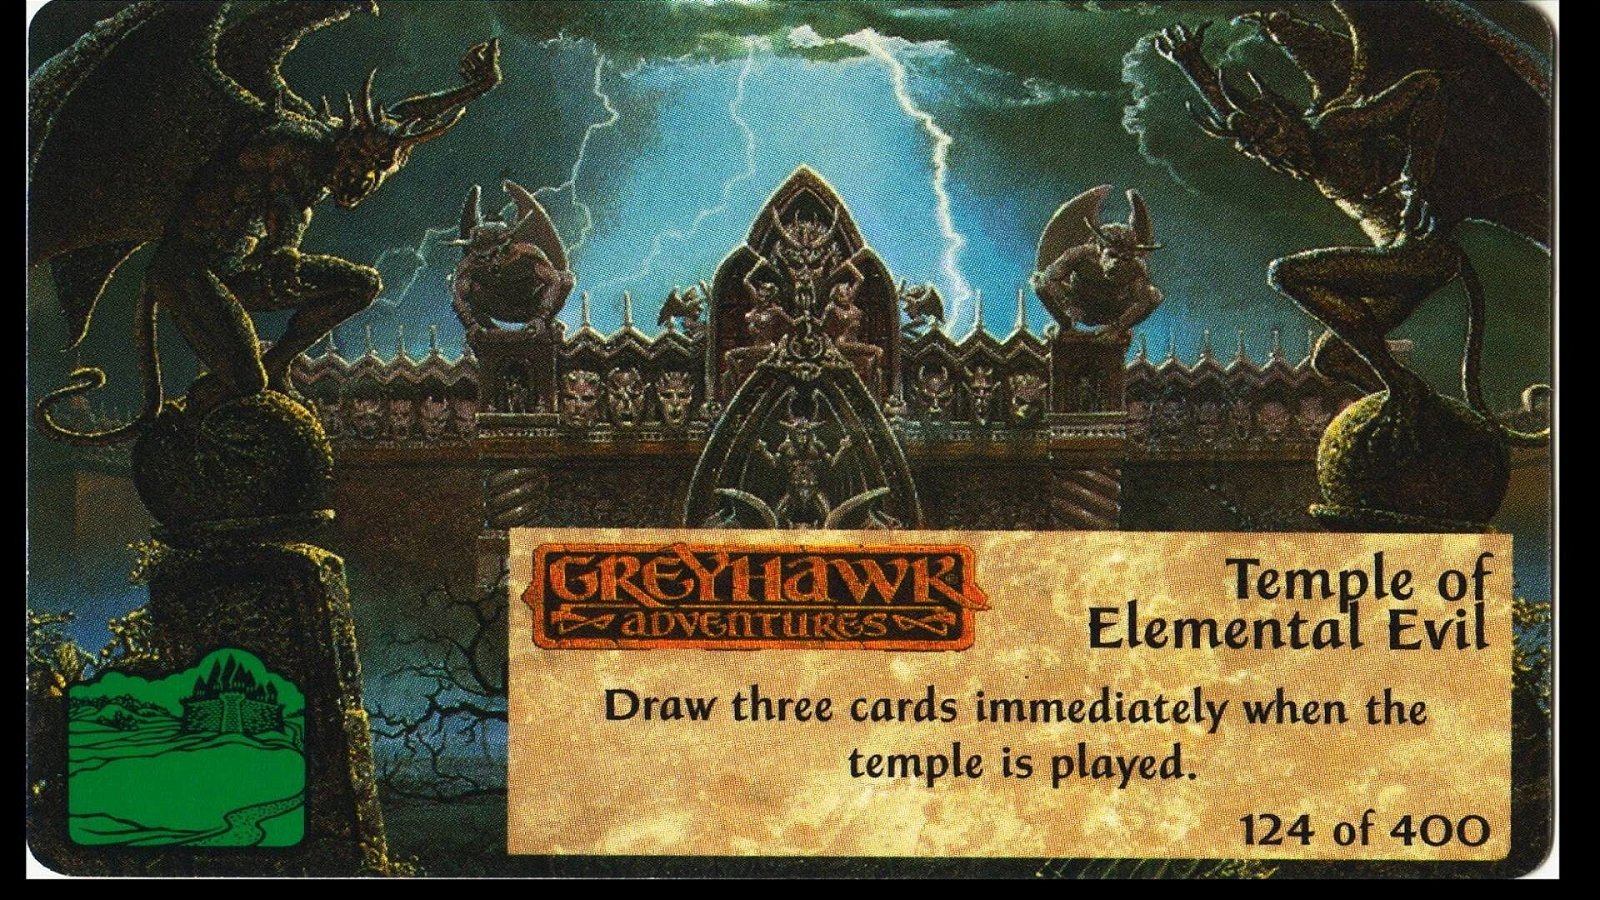 Immagine di Dungeons &amp; Dragons era un card game prima di arrivare in Magic The Gathering